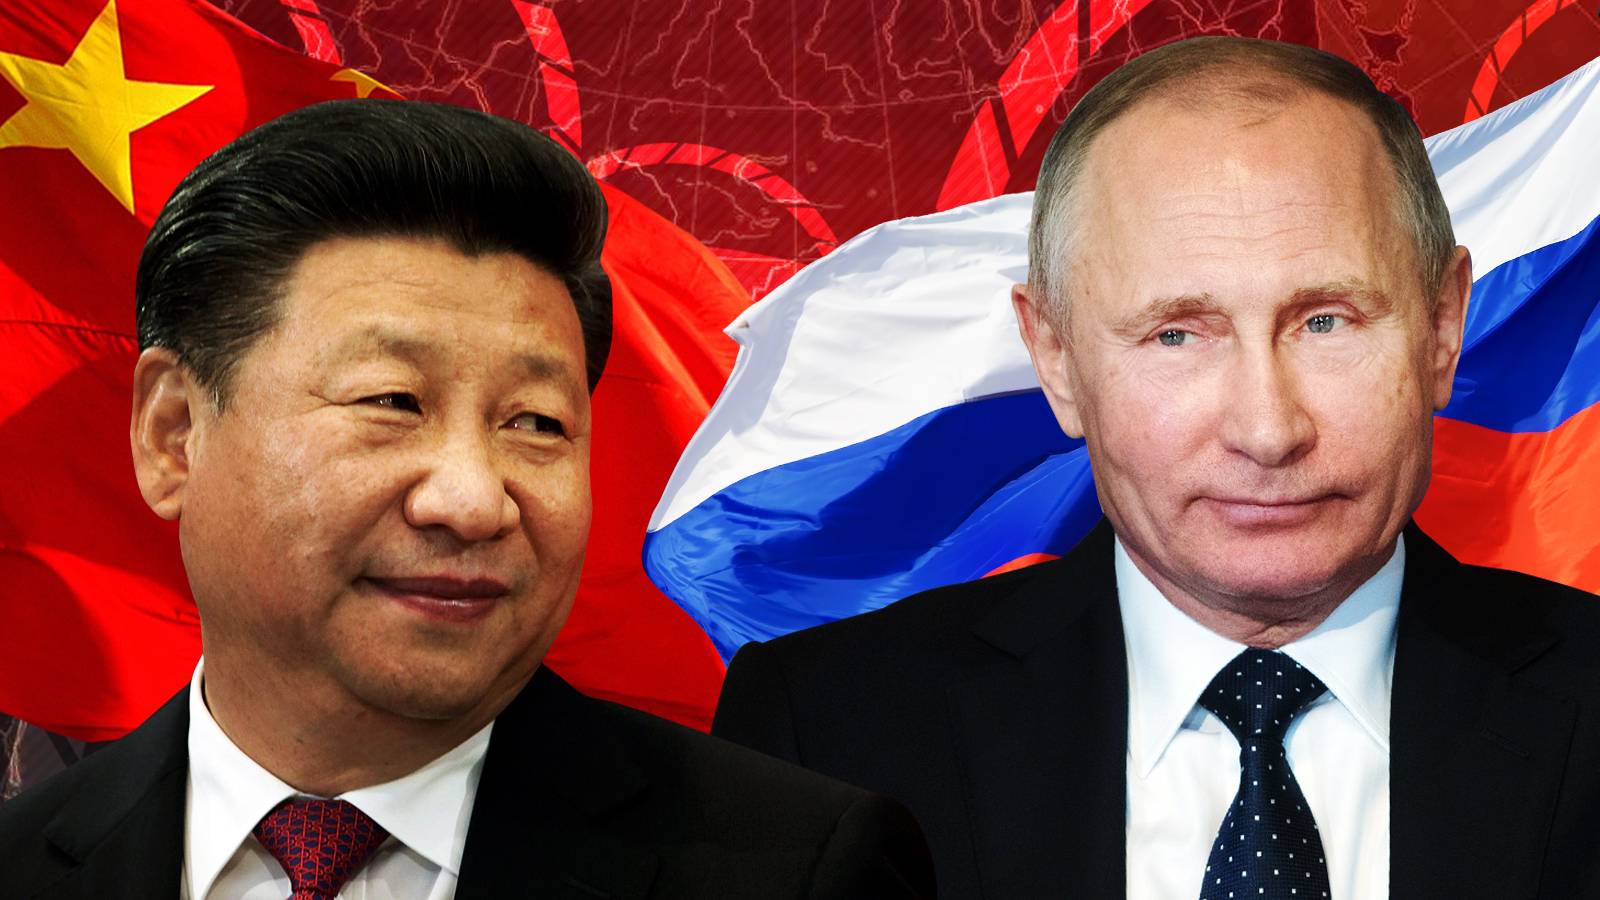 Читатели NYT предрекли России богатое будущее в союзе с Китаем на фоне угасания роли Запада